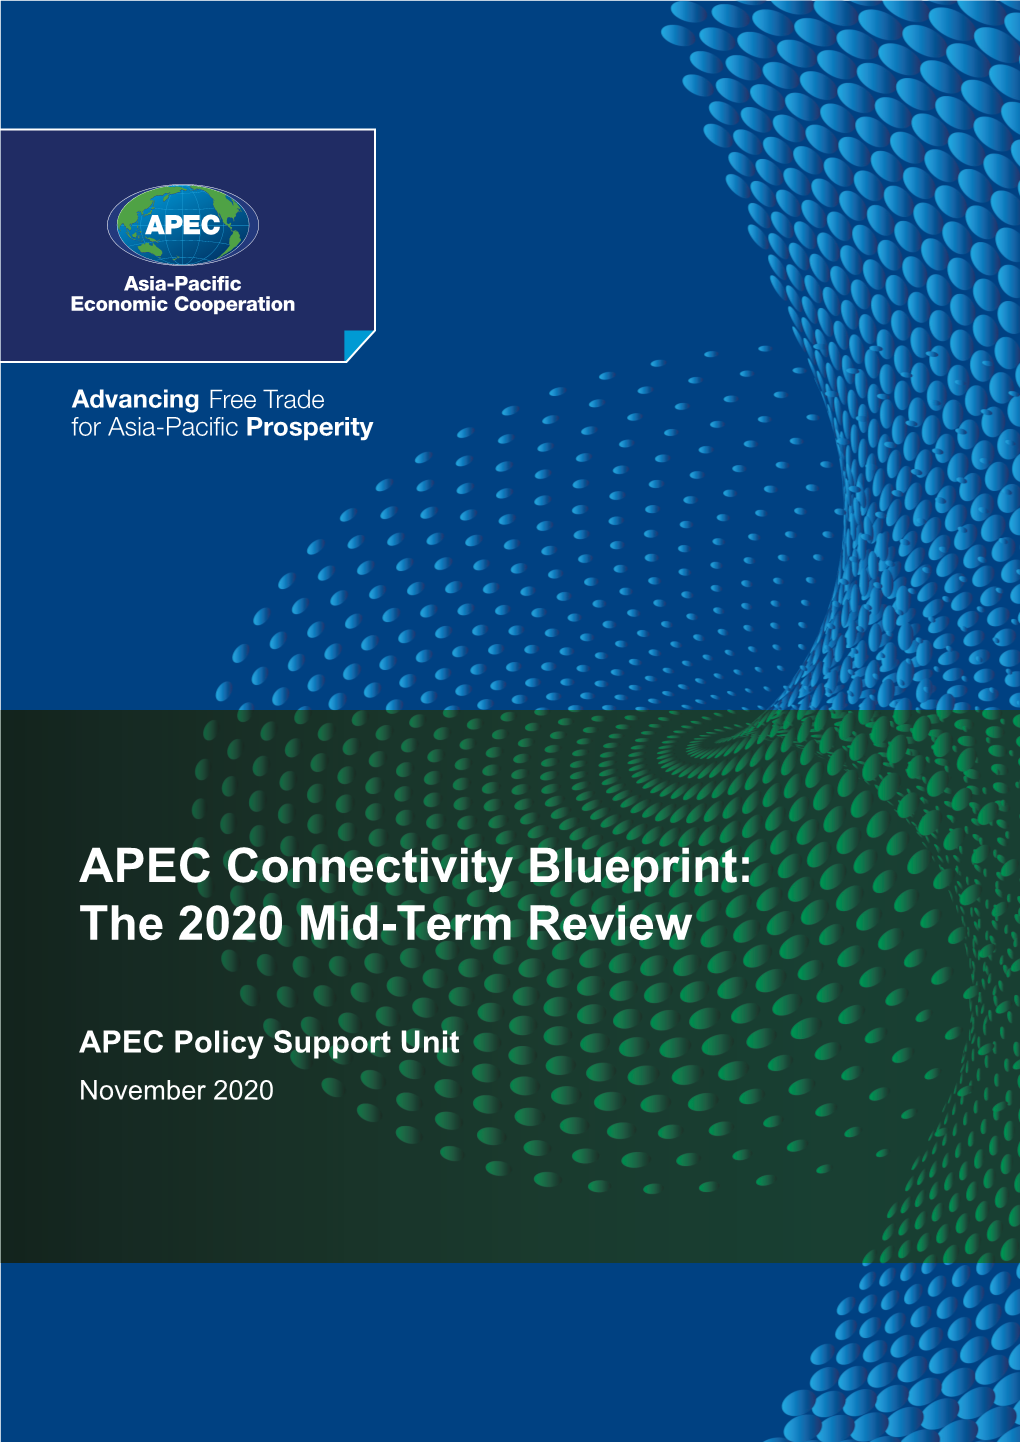 APEC Connectivity Blueprint: the 2020 Mid-Term Review